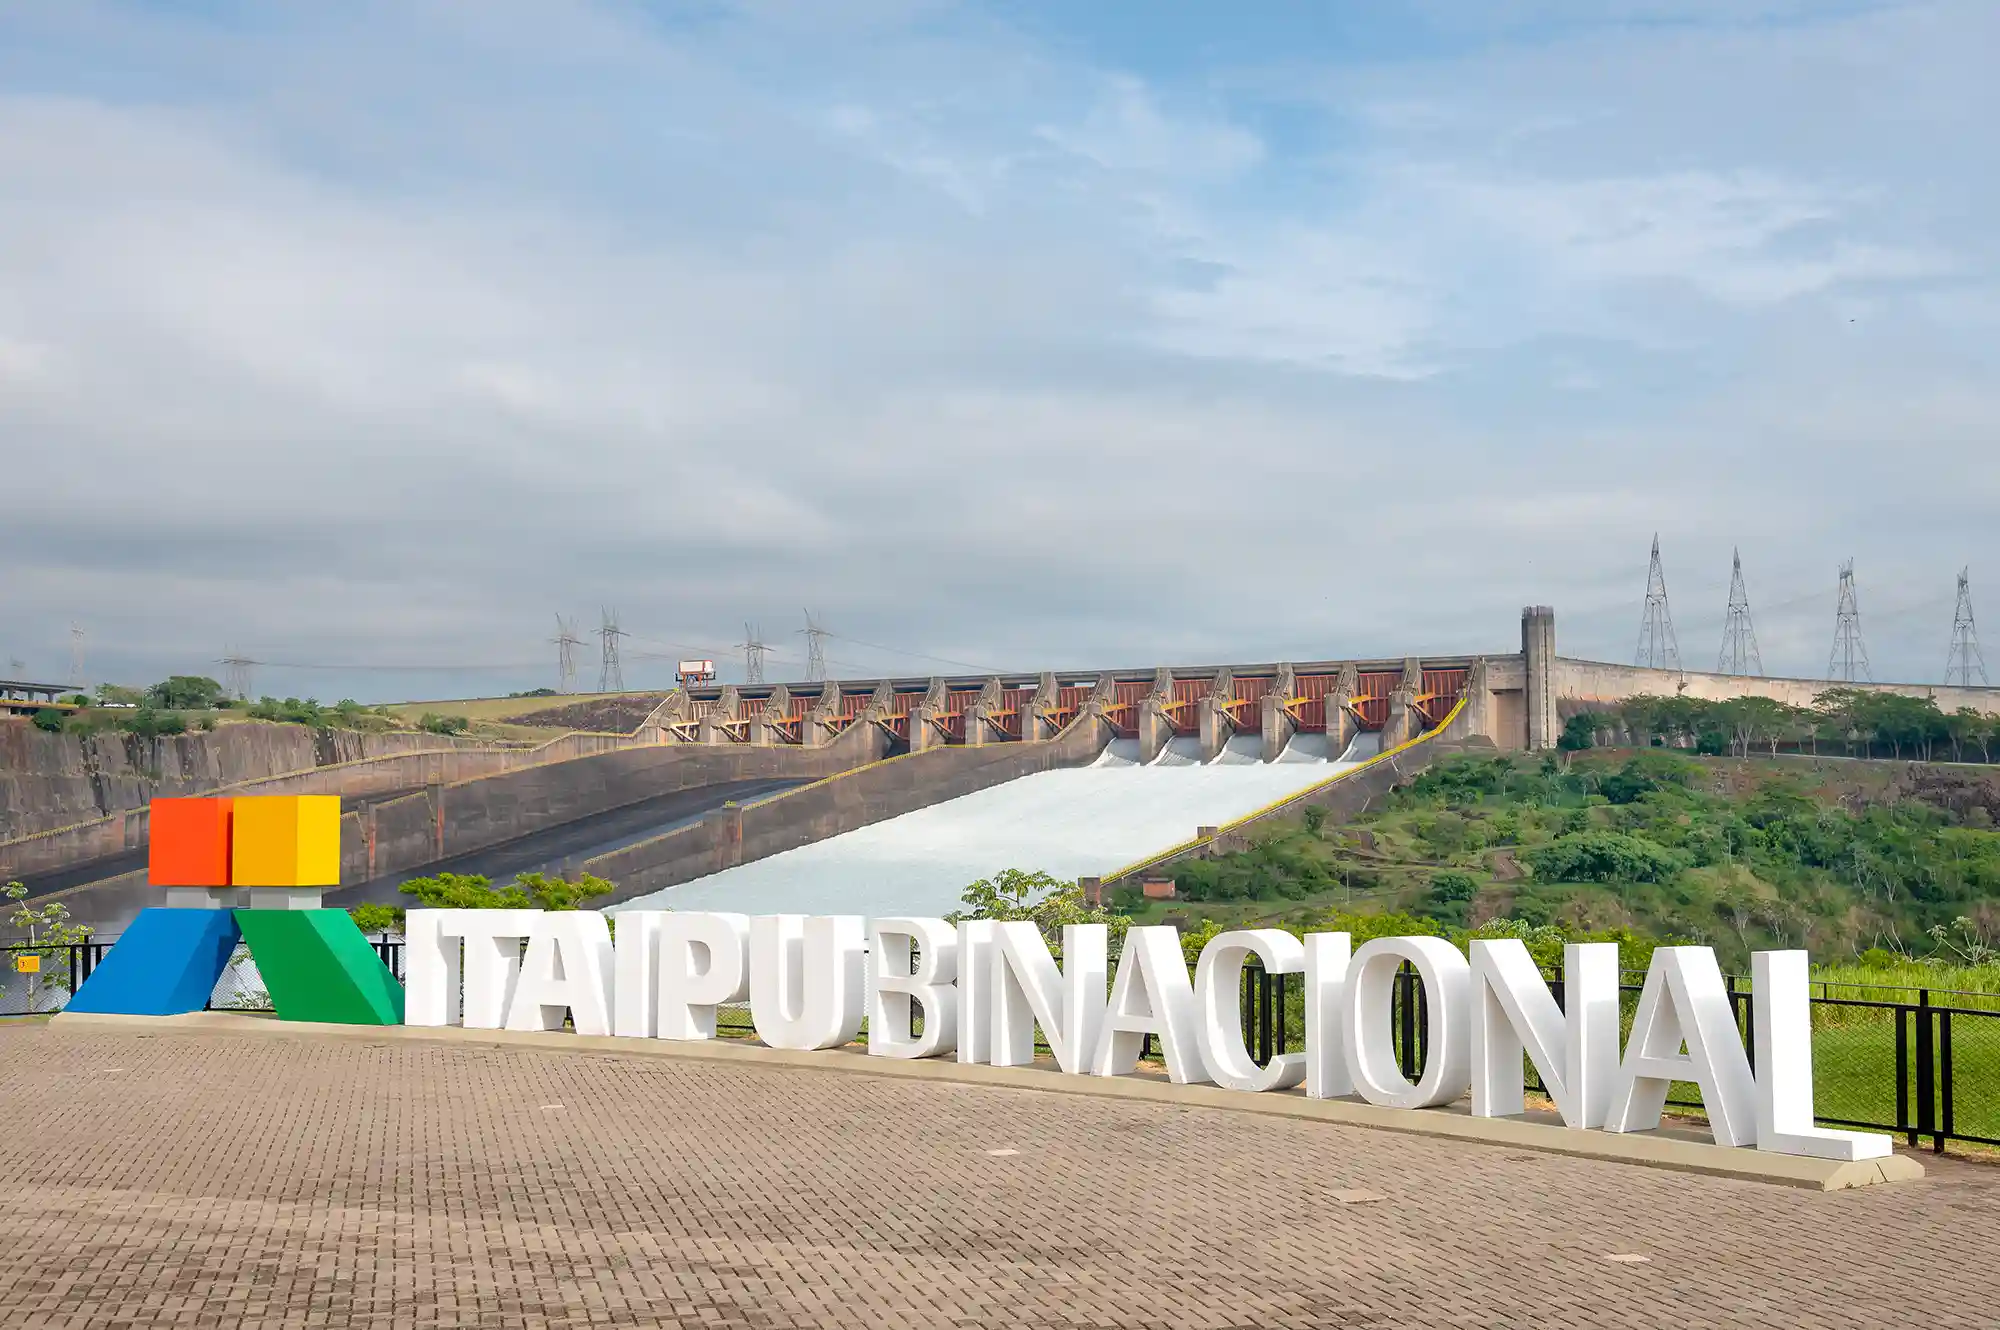 Rótulo que muestra el logo de la Central Hidroeléctrica de Itaipú, ubicada en Foz do Iguaçu, con el aliviadero abierto al fondo y cielo nublado.